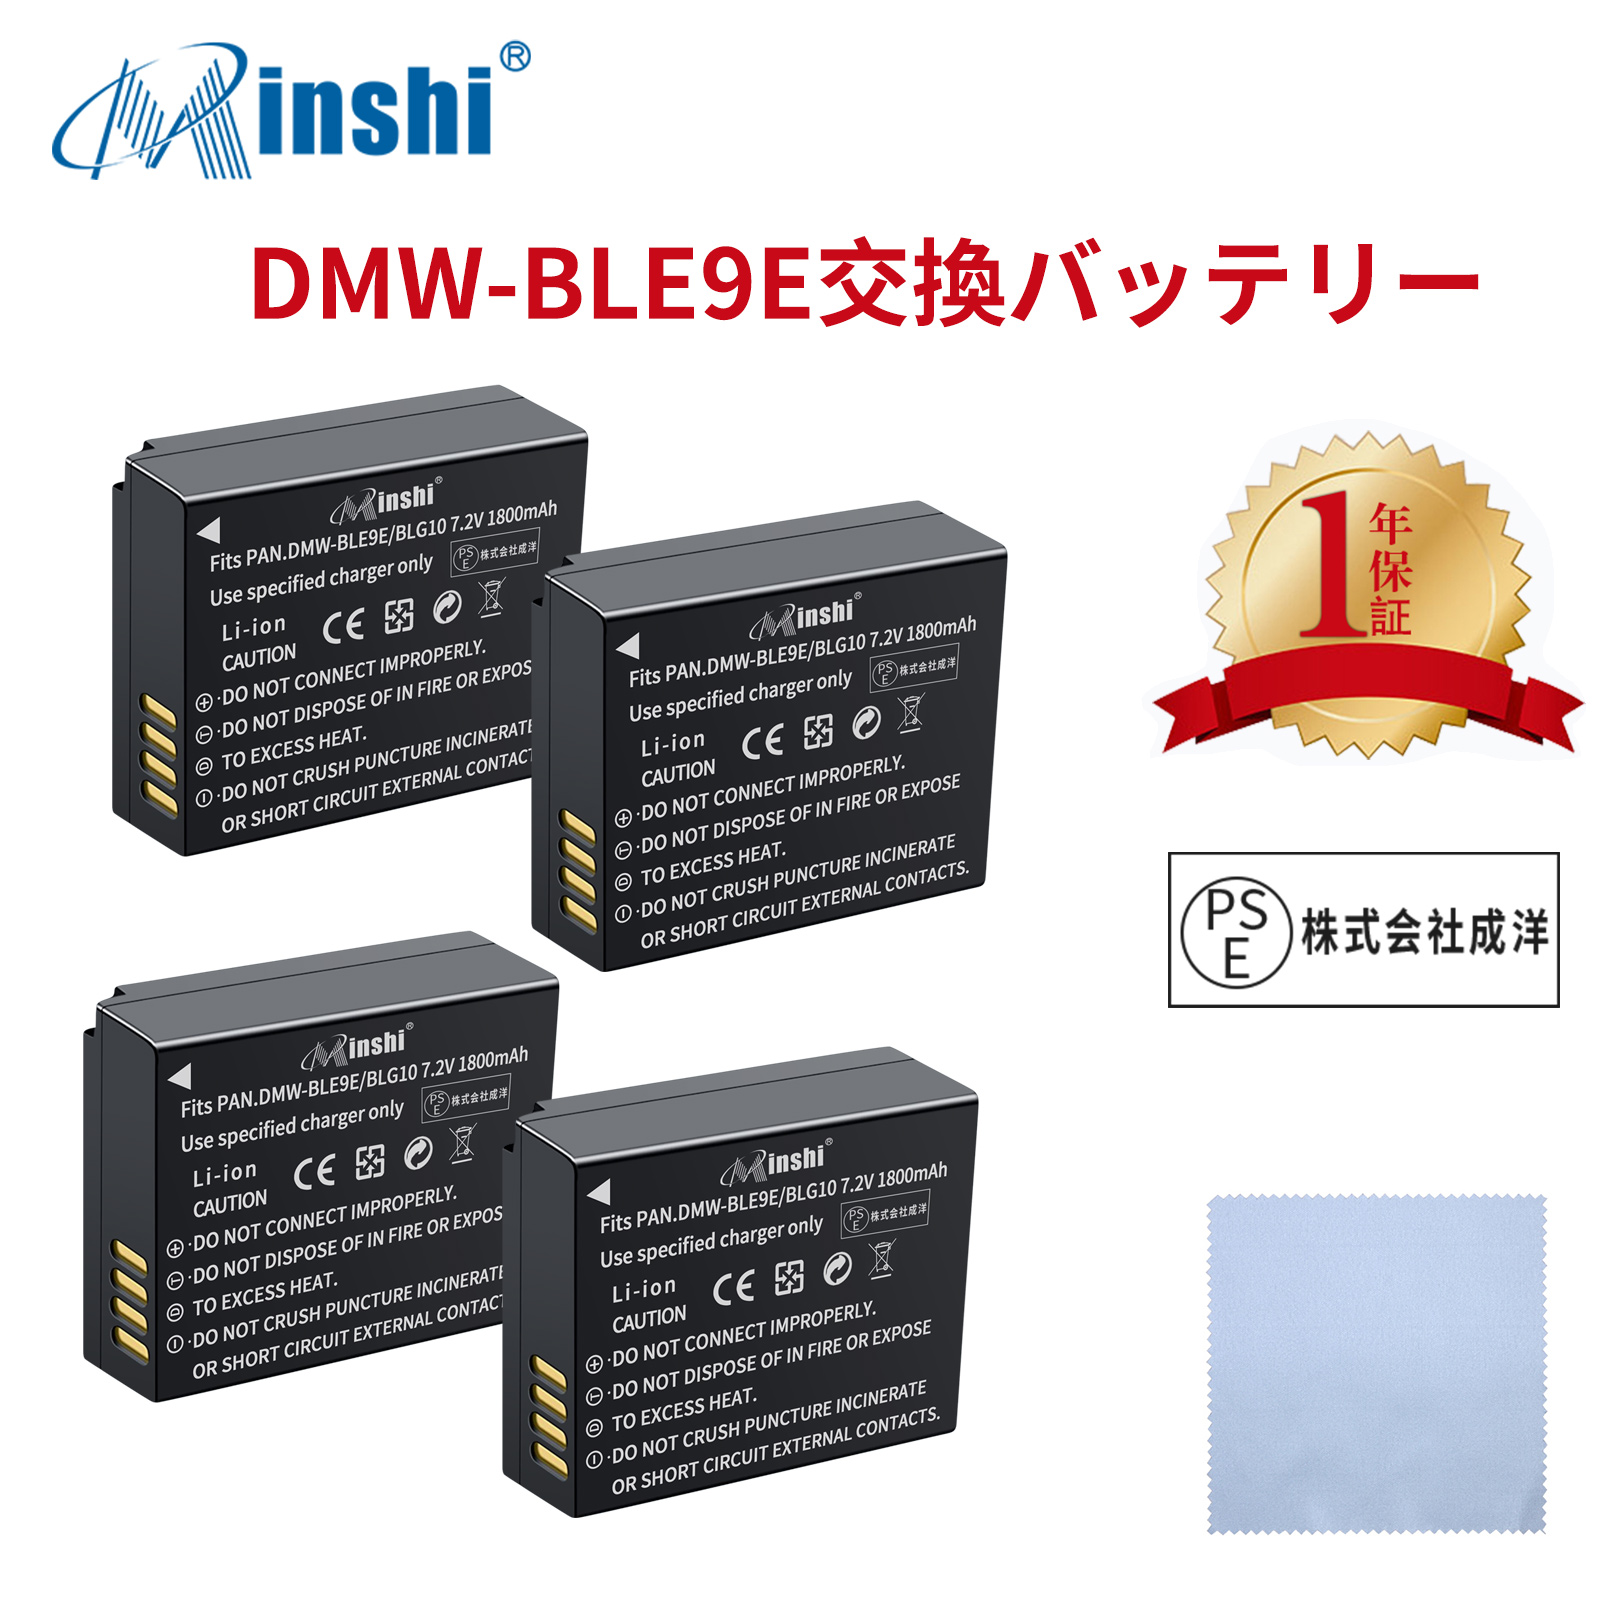 【4個セット&清潔布ー付】minshi Panasonic DC-TZ95 DMW-BLE9 【1800mAh 7.2V】PSE認定済 高品質 DMW-BLG10 交換用バッテリー